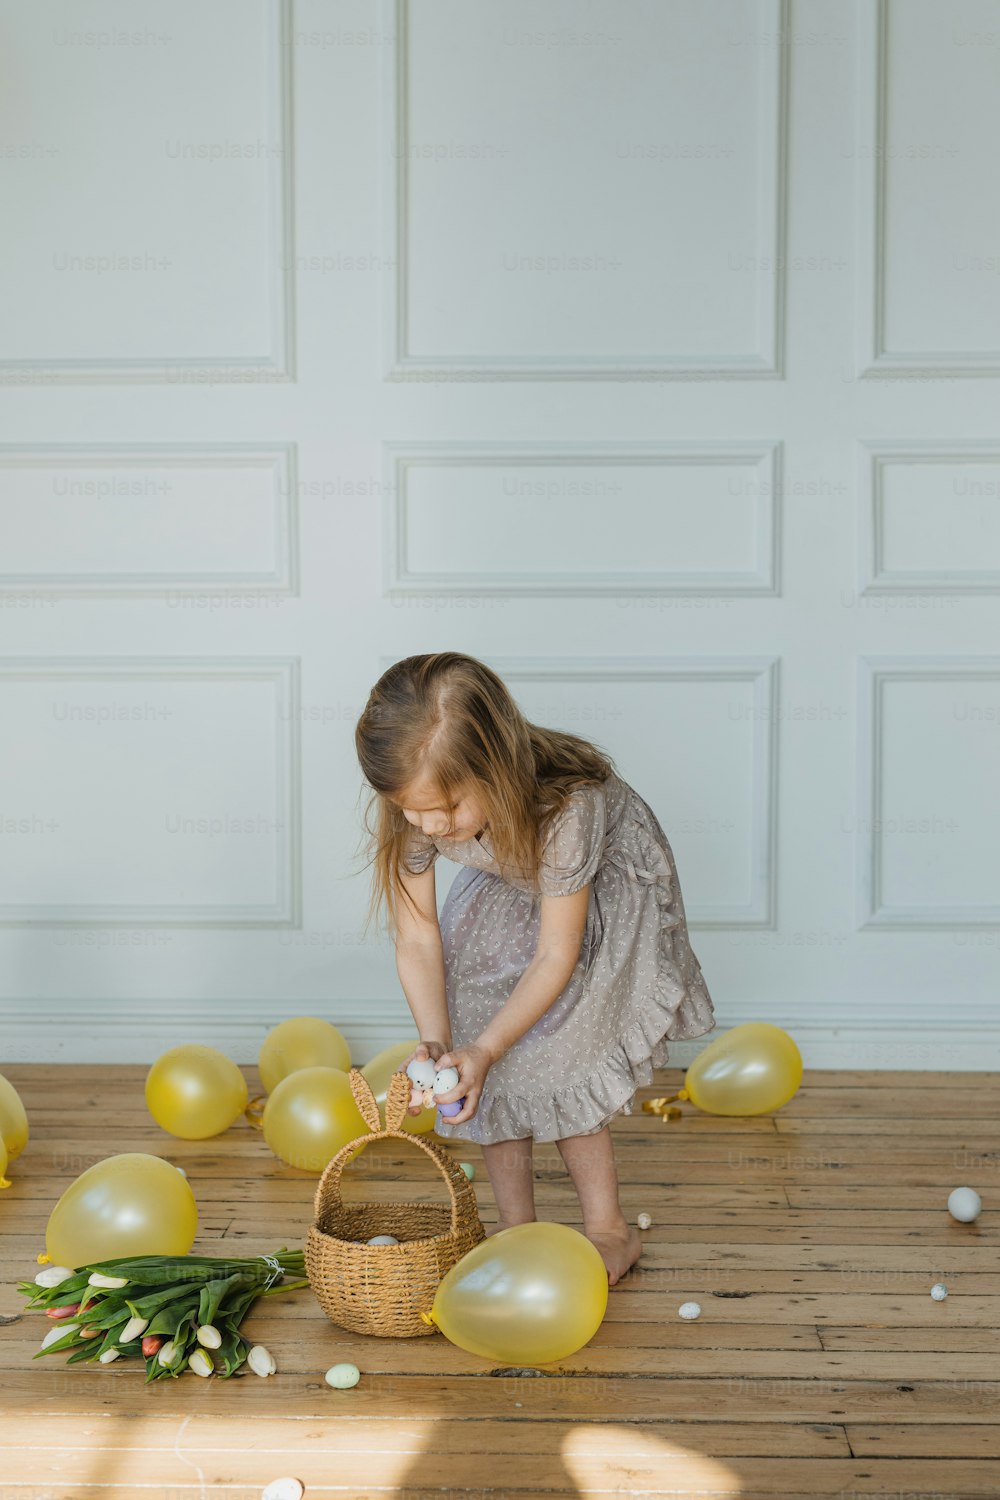 Ein kleines Mädchen steht neben einem Korb voller Luftballons